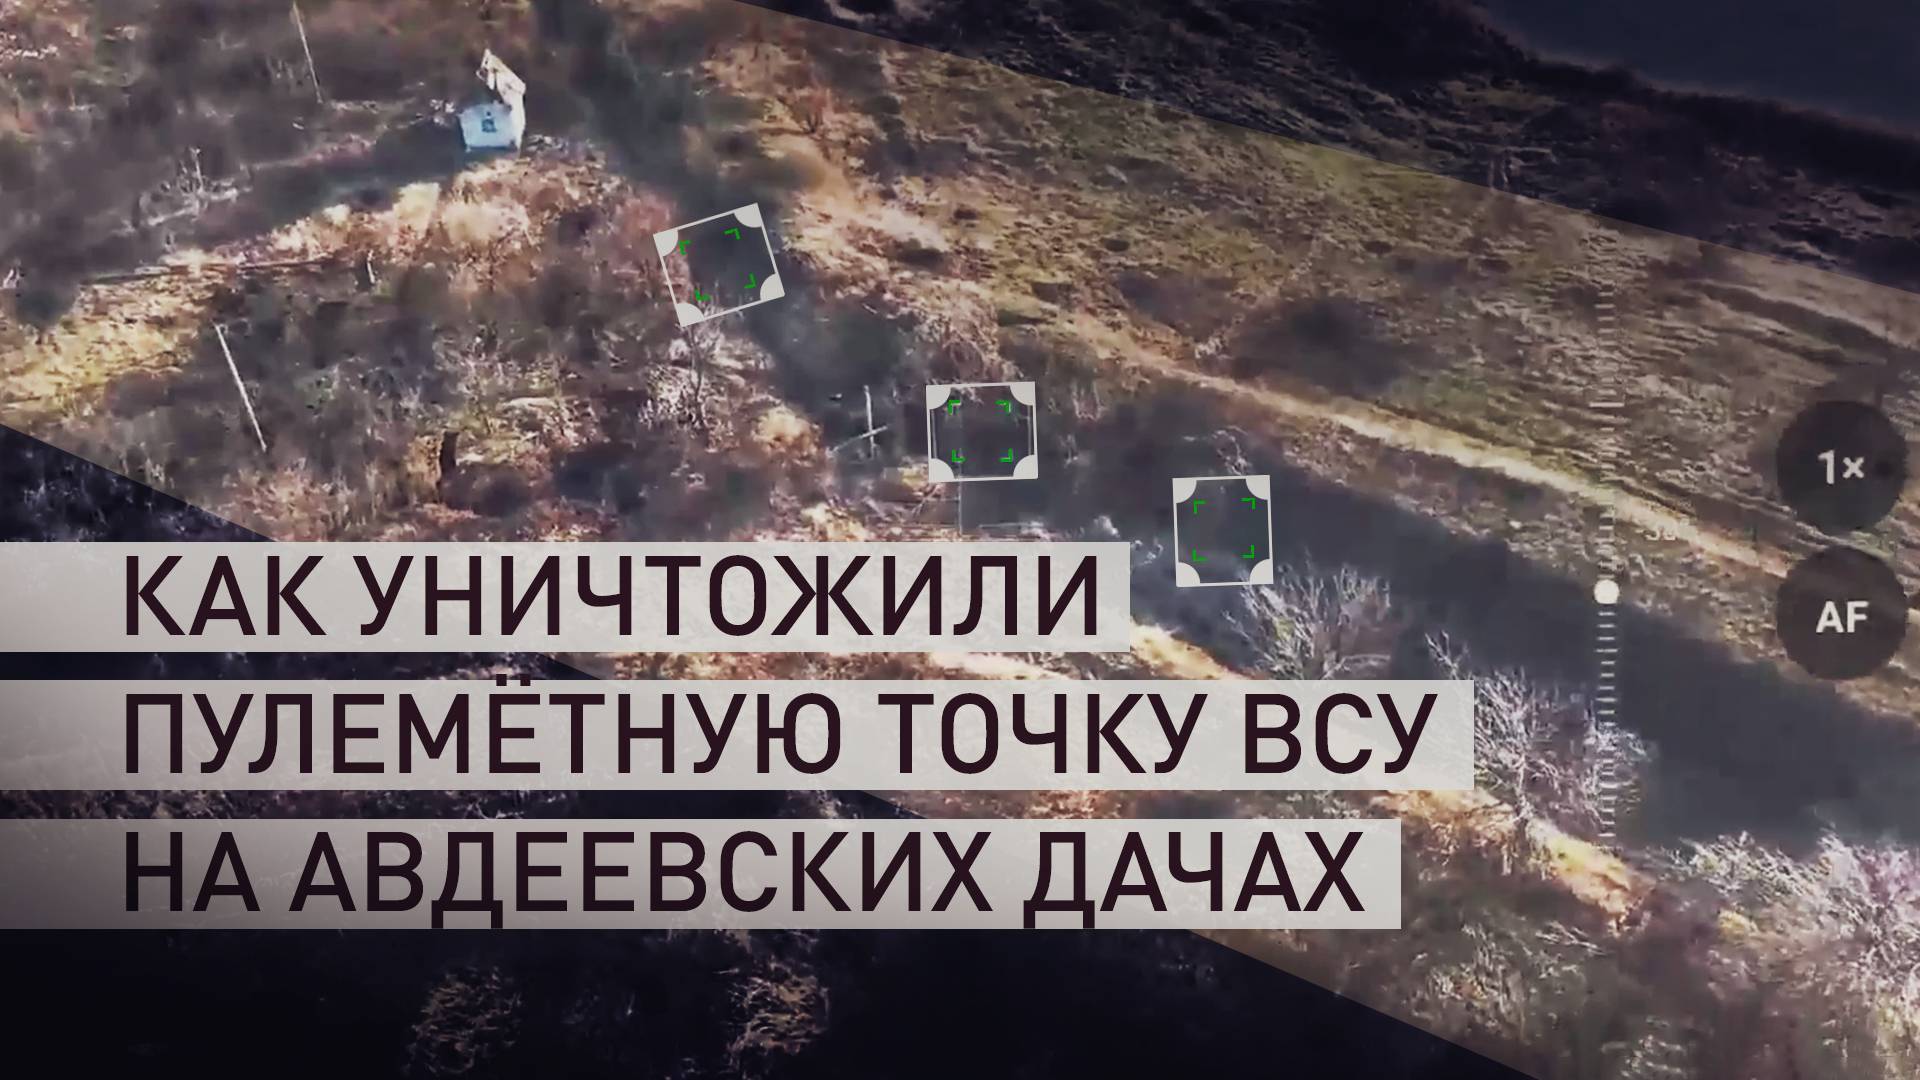 «Артиллерией попасть в неё было нереально»: штурм пулемётной точки ВСУ на Авдеевских дачах